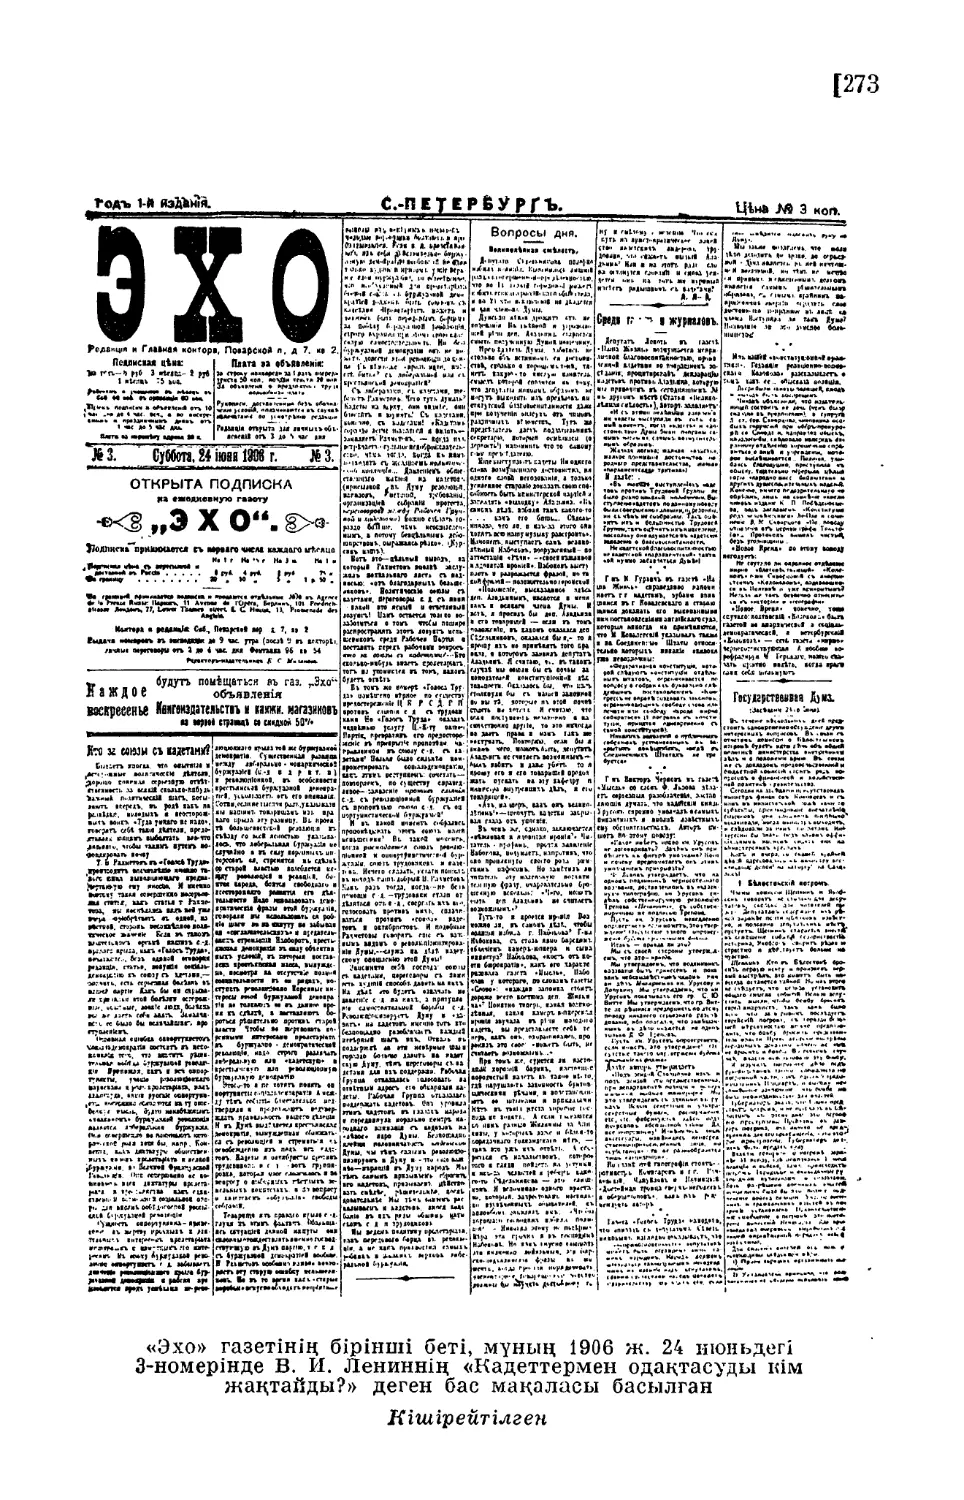 «Эхо» газетінің бірінші беті, мұиың 1906 ж. 24 июнь- дегі 3-номерінде В. И. Лениннің «Кадеттсрмен одақта- суды кім жақтайды?» деген бас мақаласы басылған